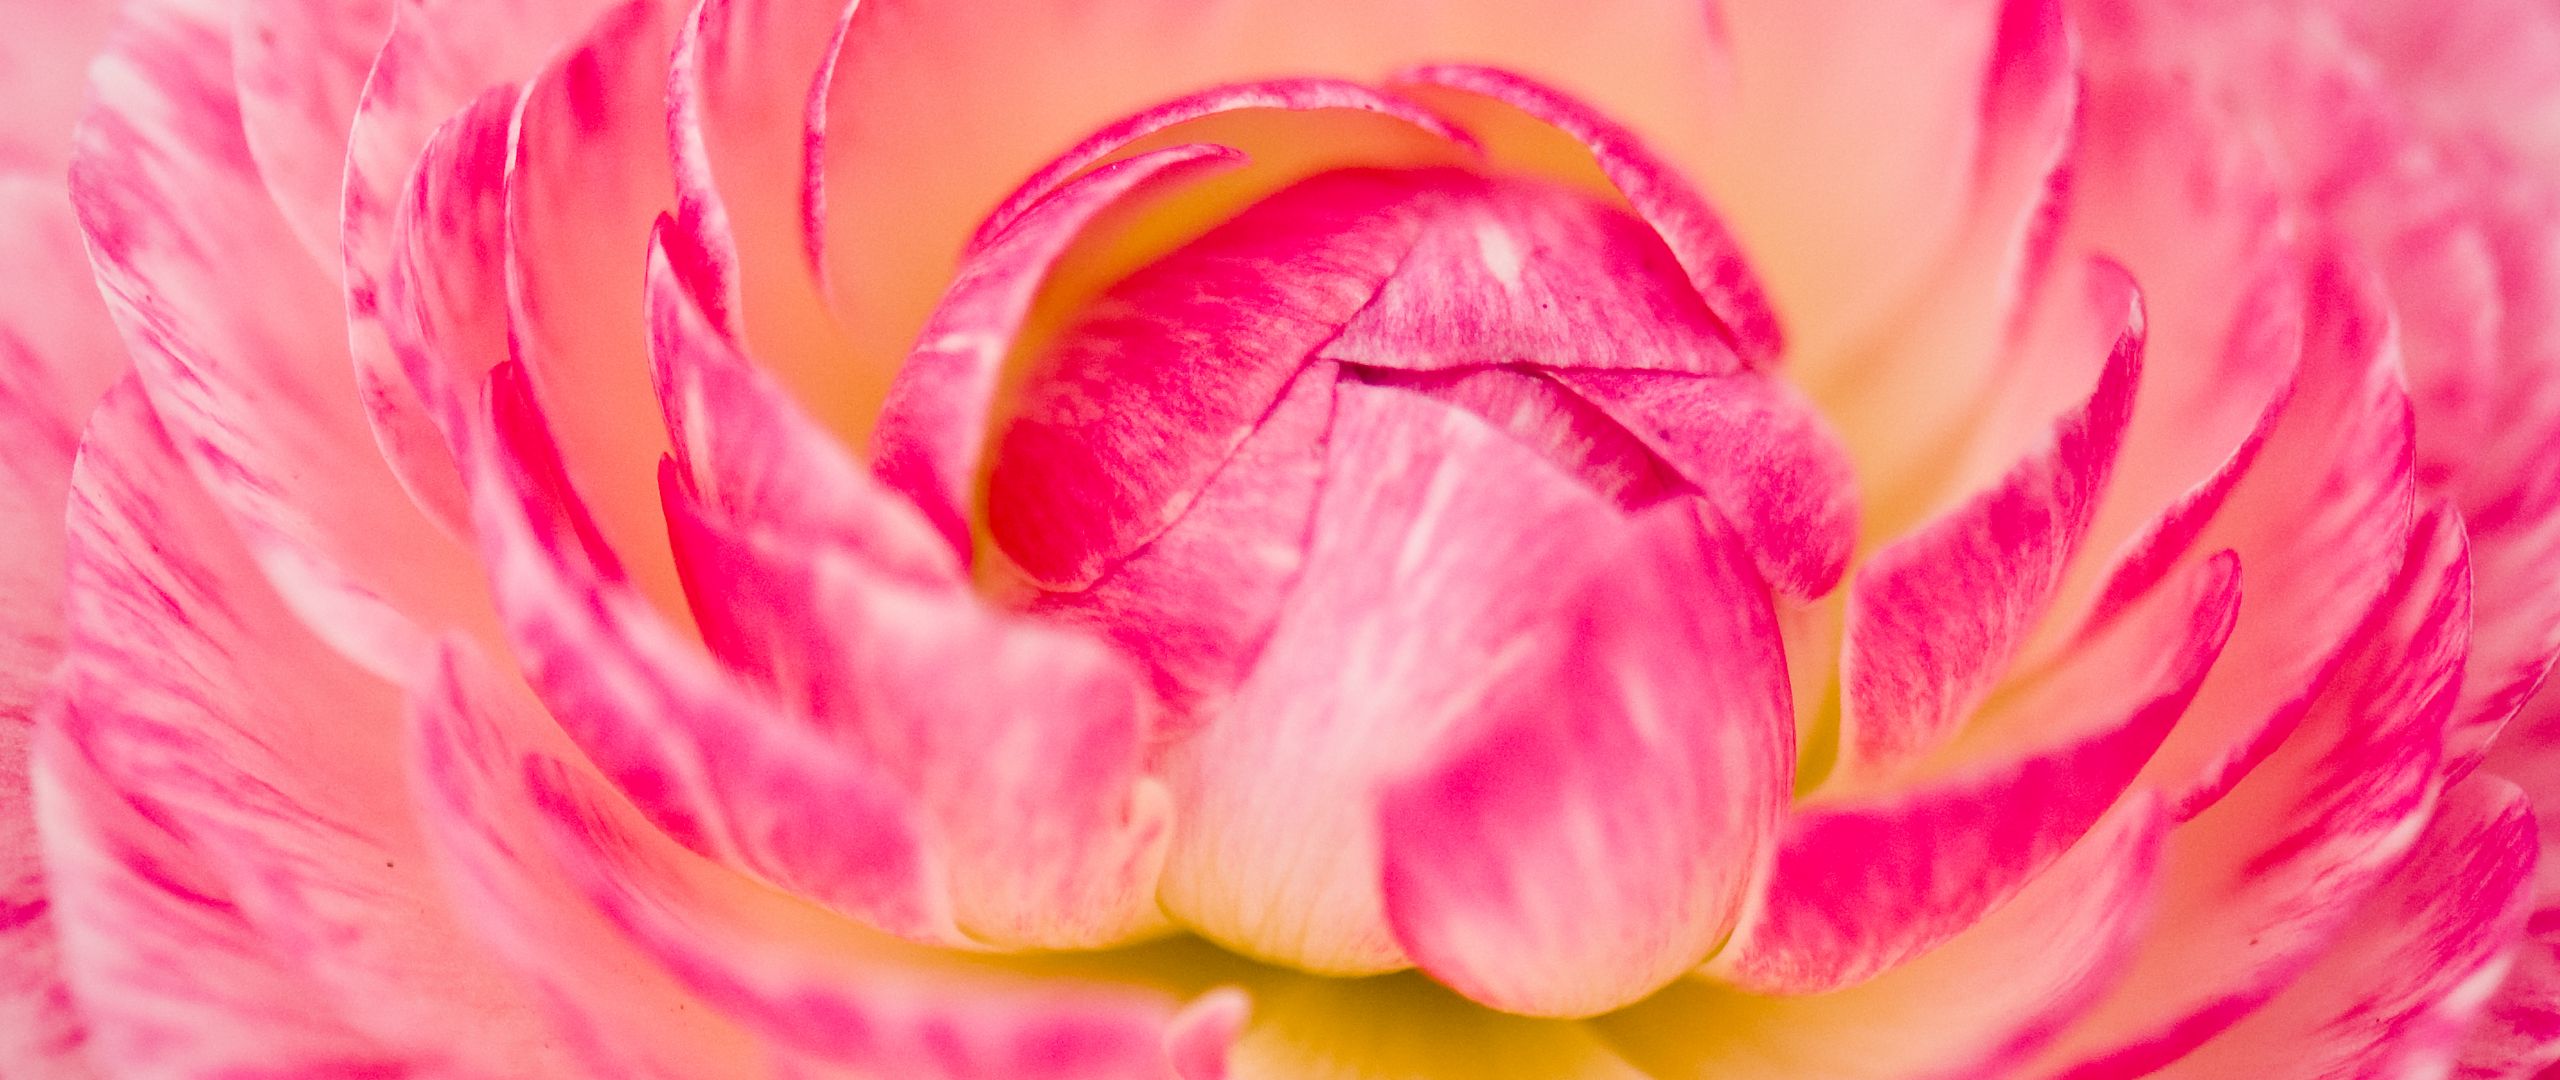 Wallpaper Flower petals up close